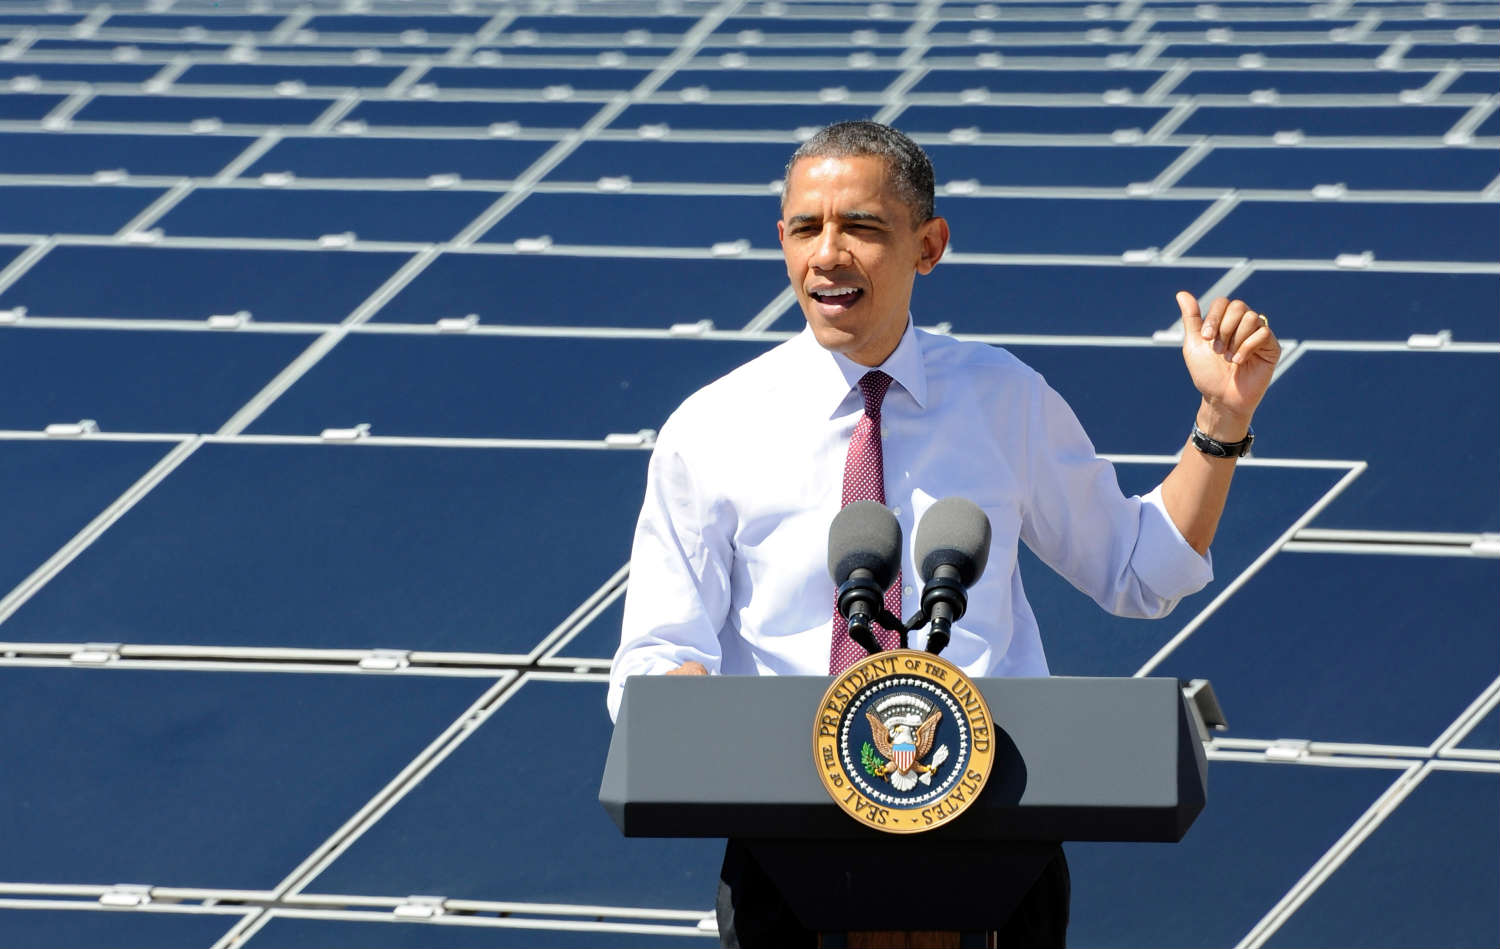 Obama touts solar power